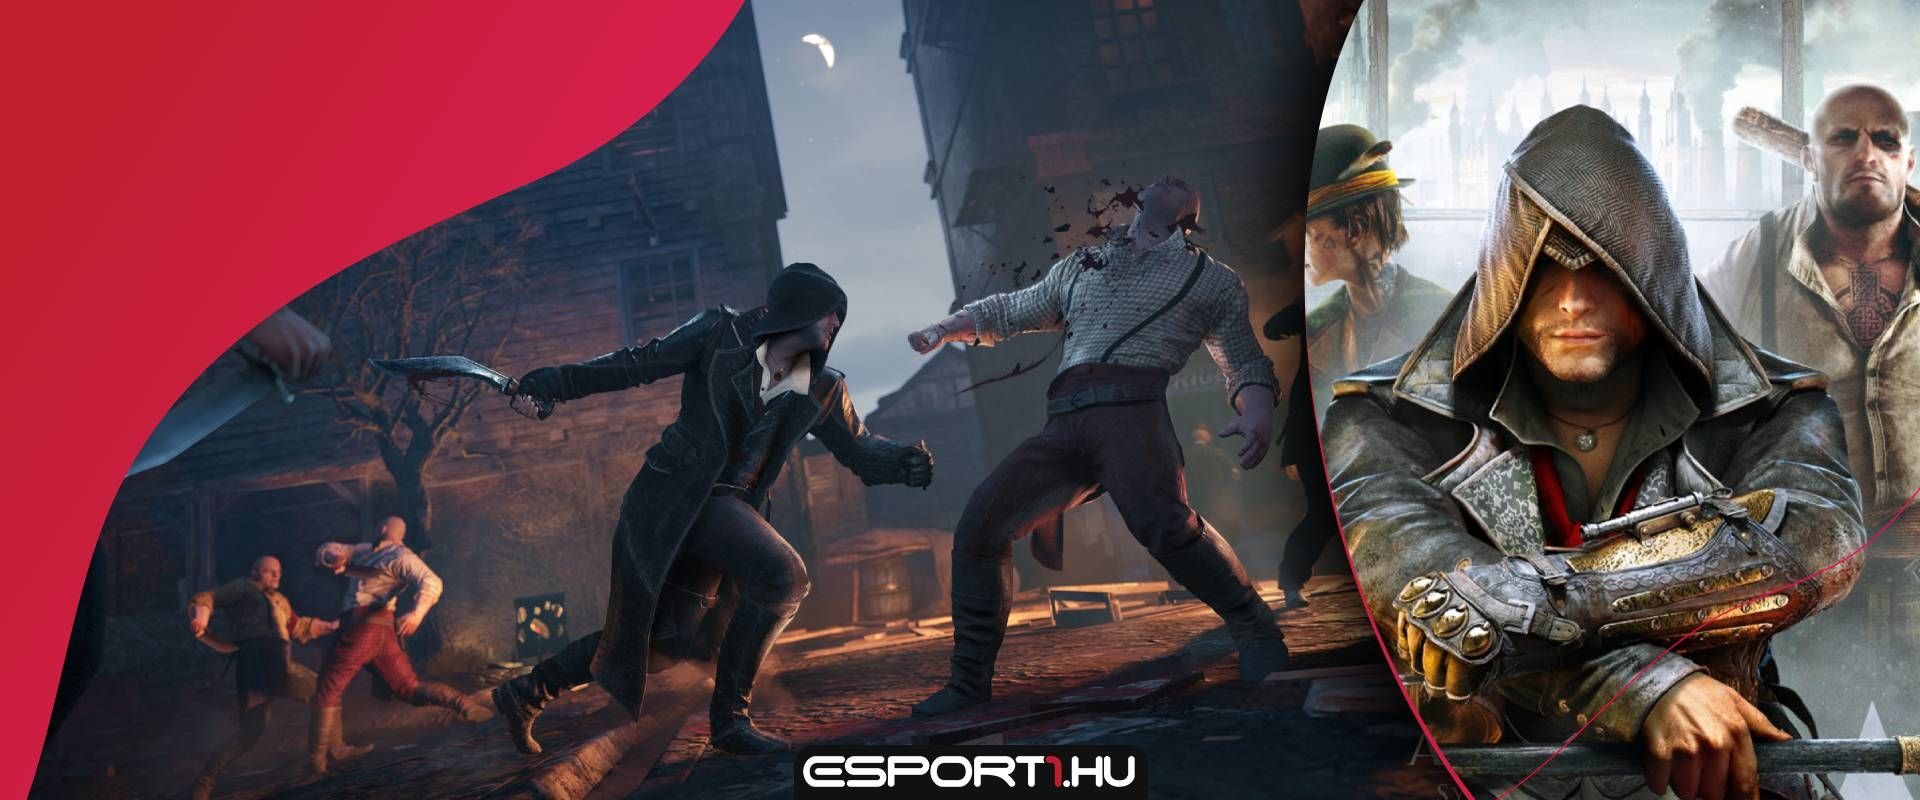 Assassin's Creedet zsebelhetünk be ingyen a következő Epic Store ciklusban